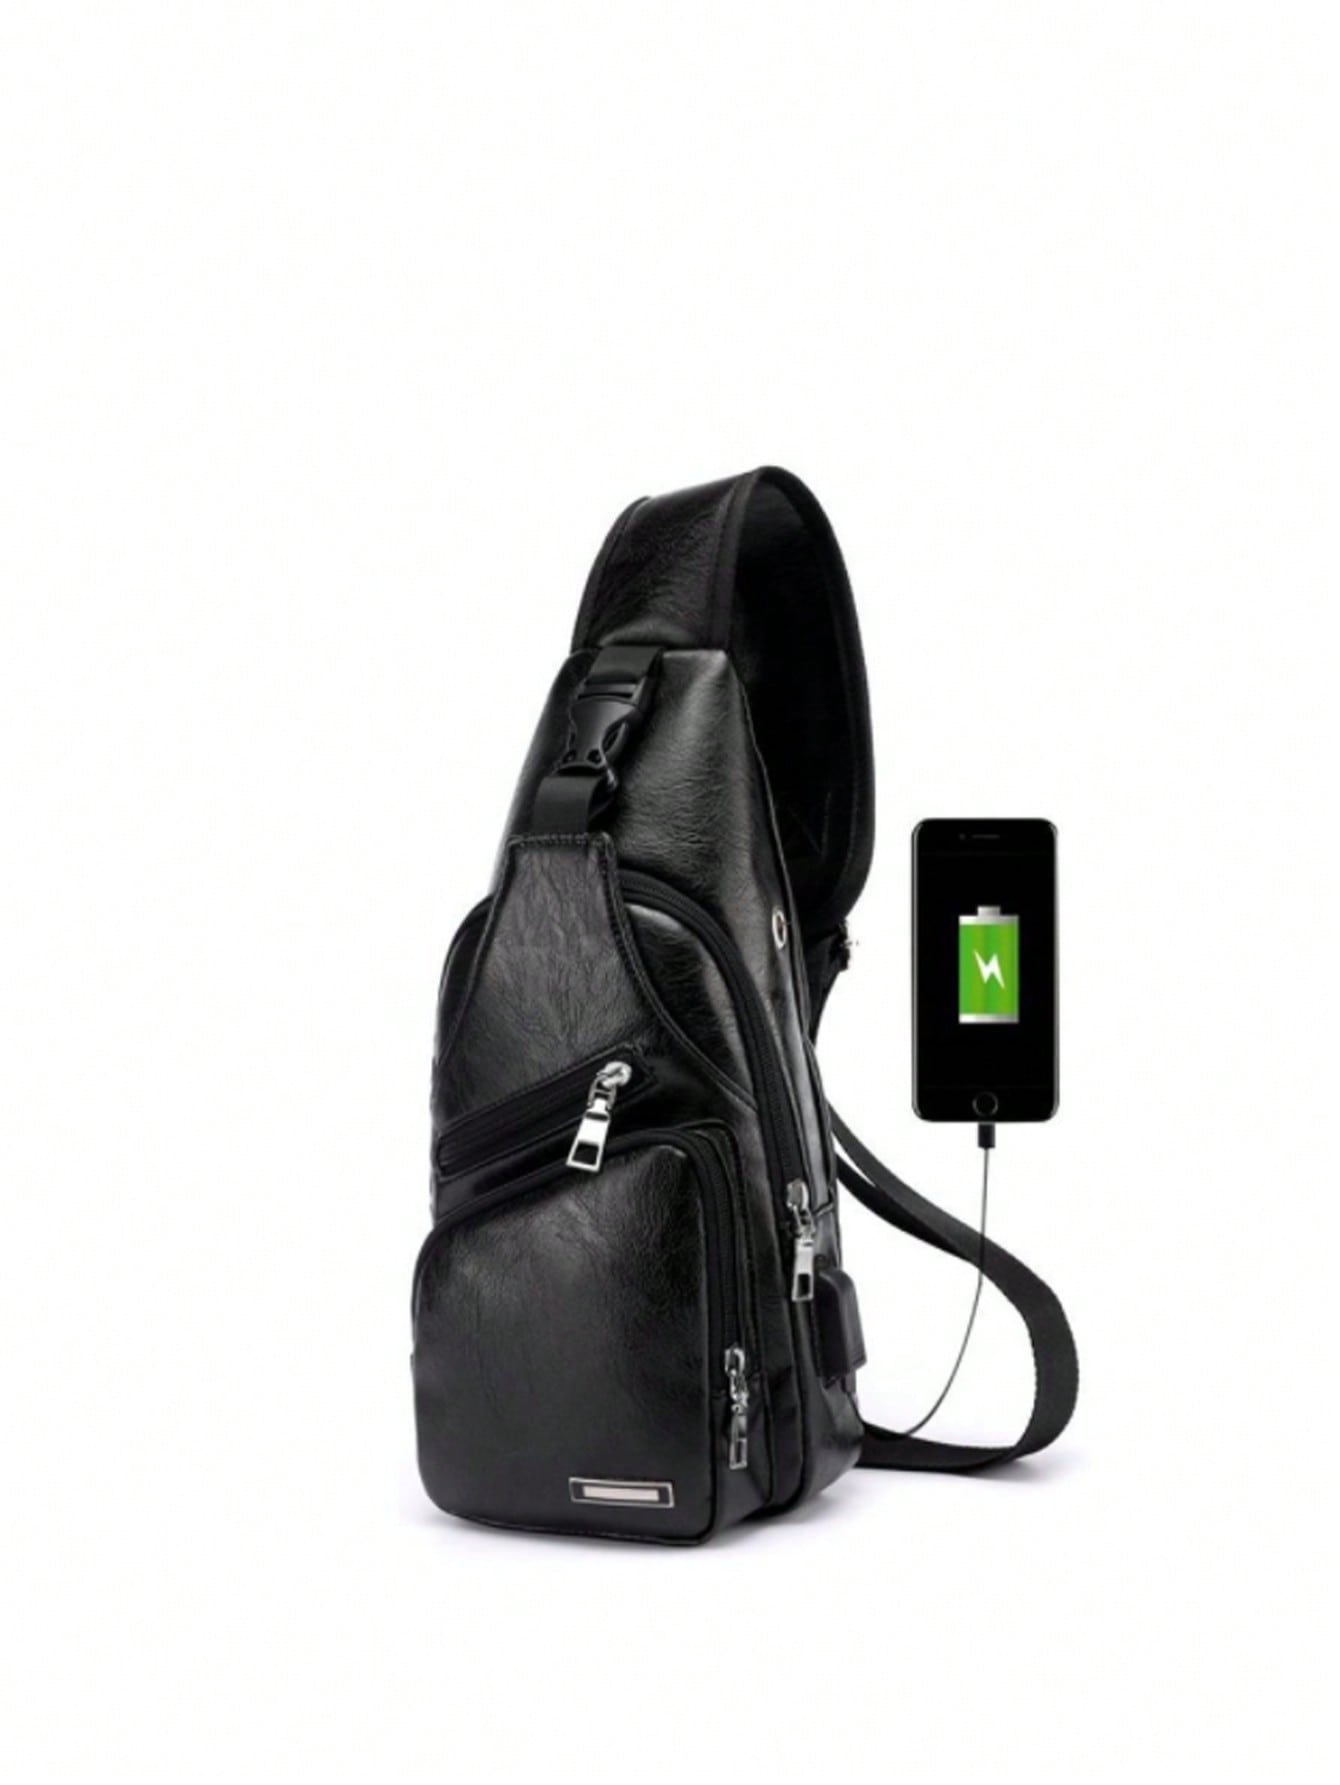 1 шт. новая мужская сумка через плечо с USB-портом для зарядки нагрудная сумка спортивная сумка через плечо, черный